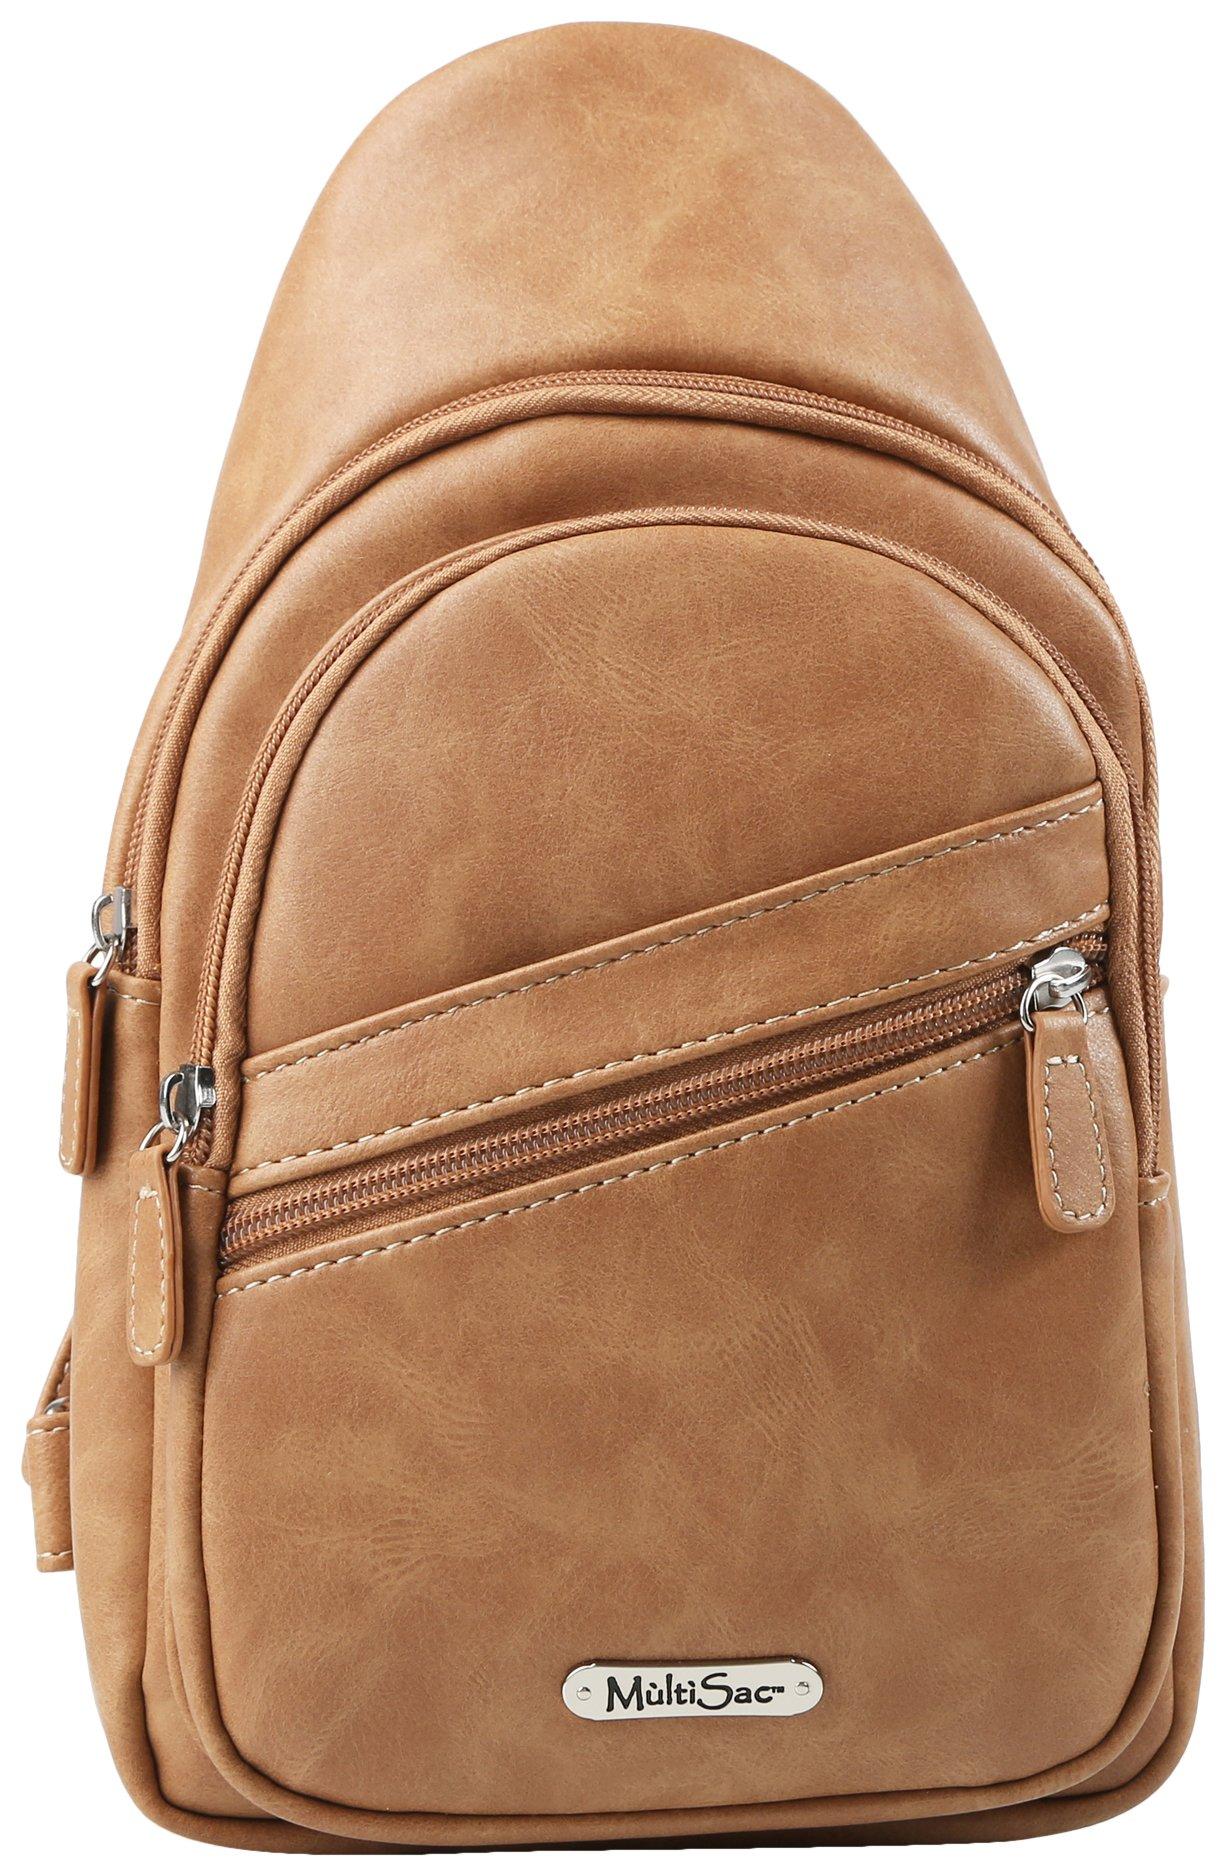 MultiSac Casper Solid Vegan Leather Sling Bag